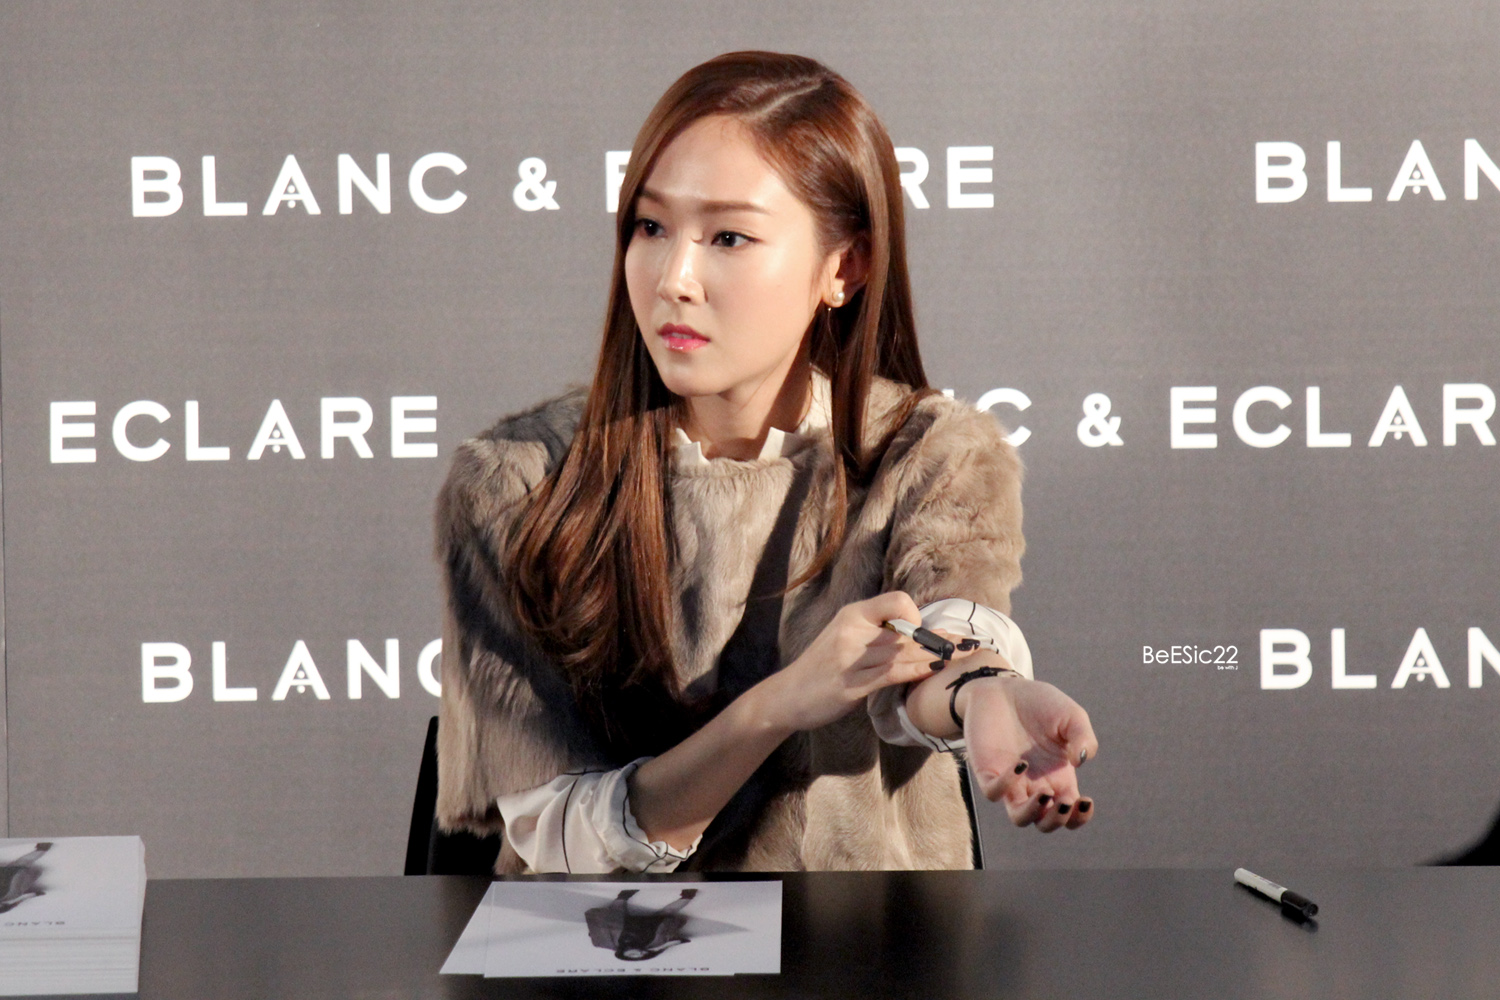 [PIC][22-12-2014]Jessica tham dự buổi fansign cho "BLANC&ECLARE" chi nhánh Seoul, Hàn Quốc vào chiều nay 227E8444553265B826D9CE